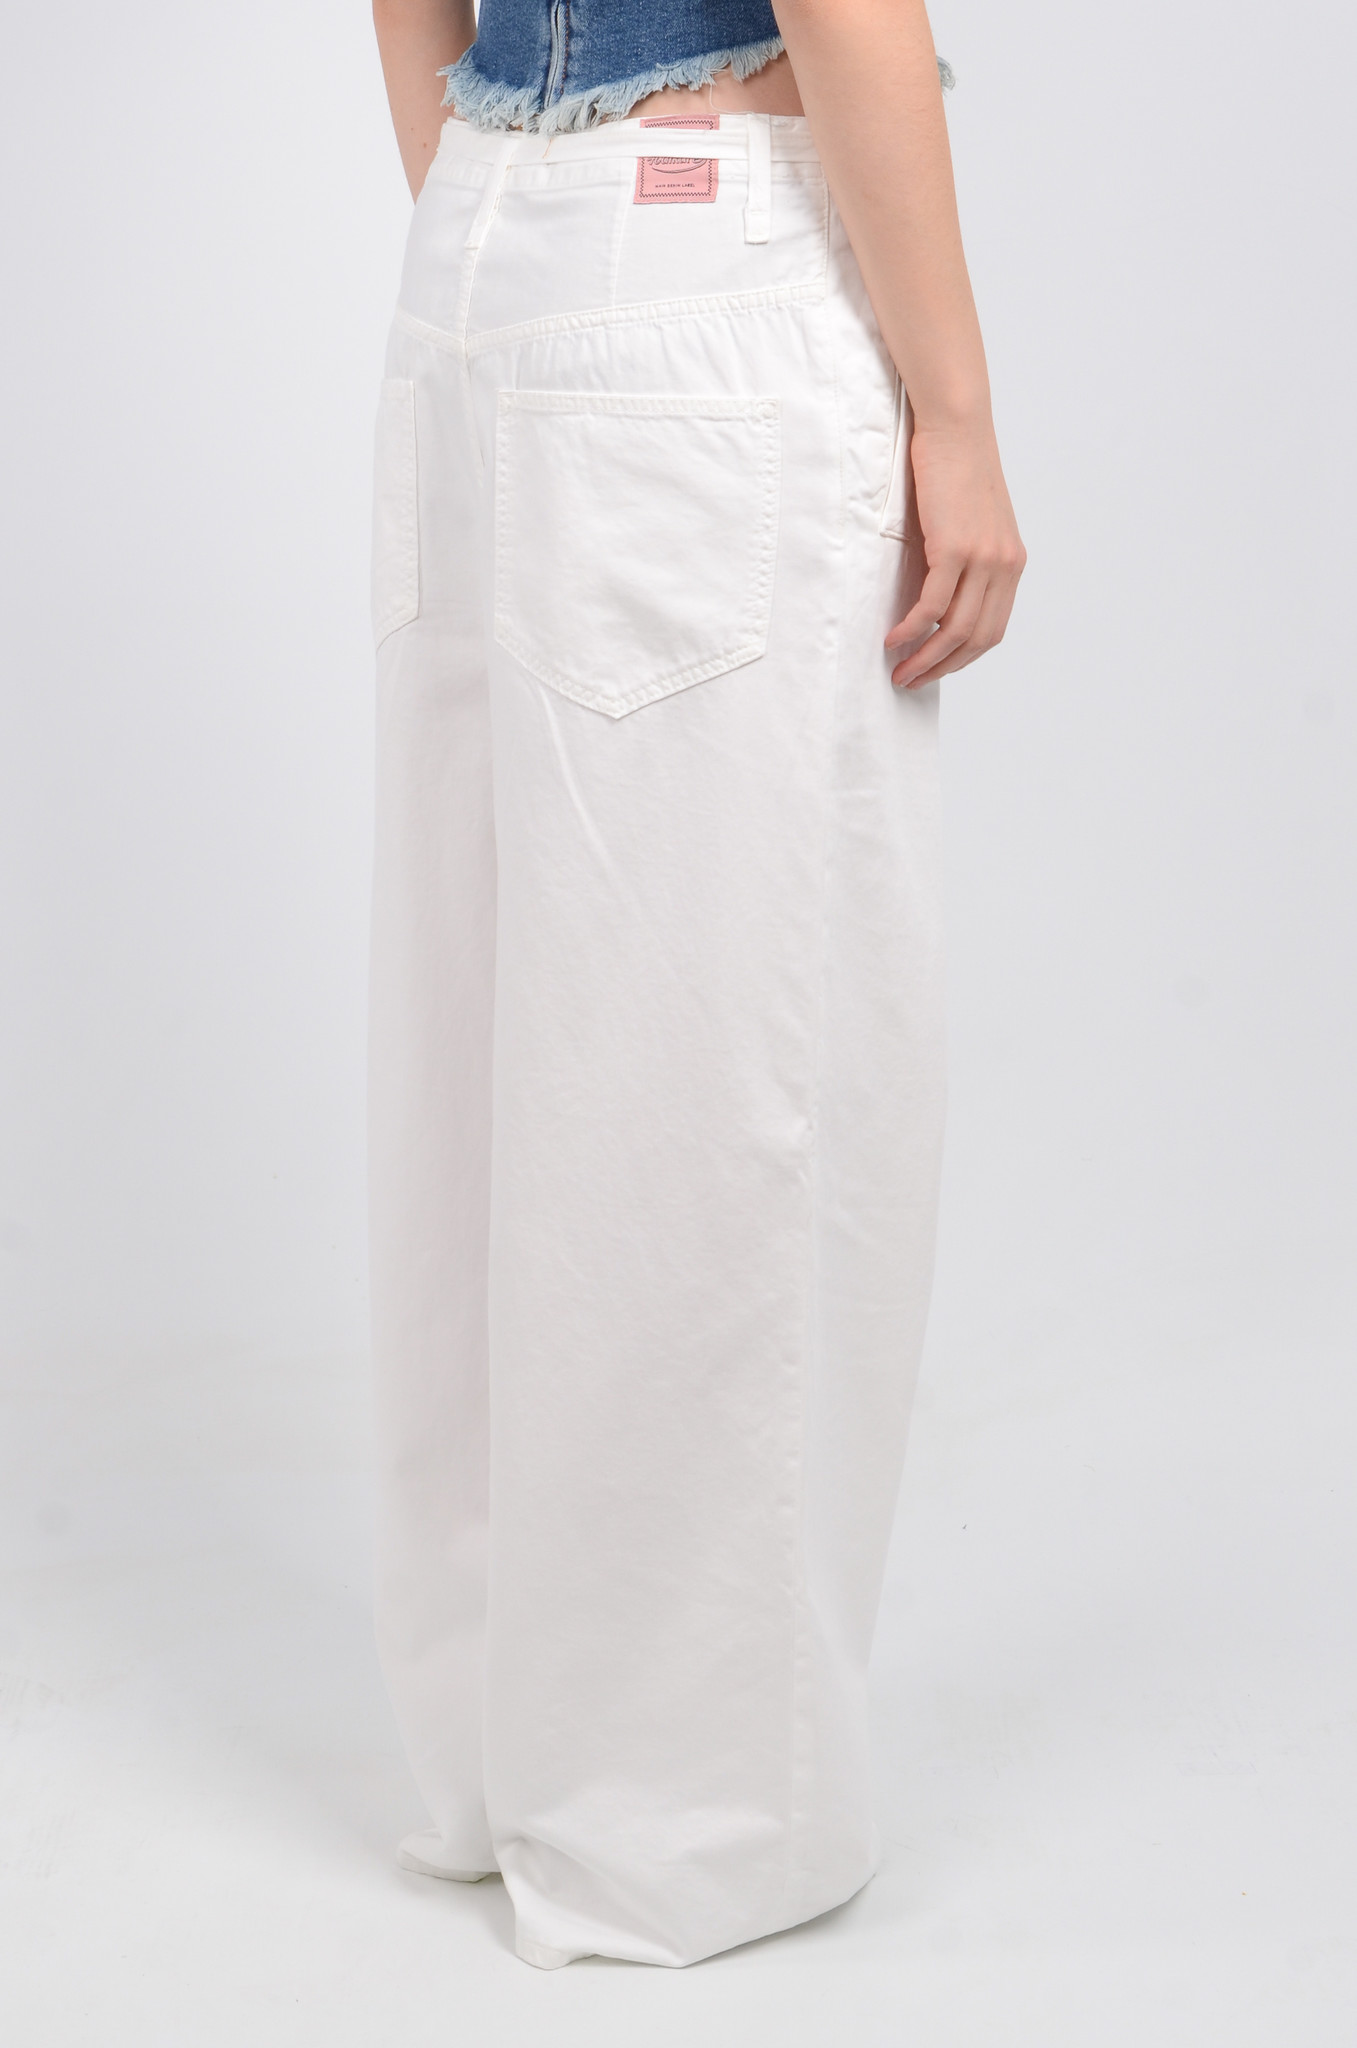 Oralie Jeans in White-7